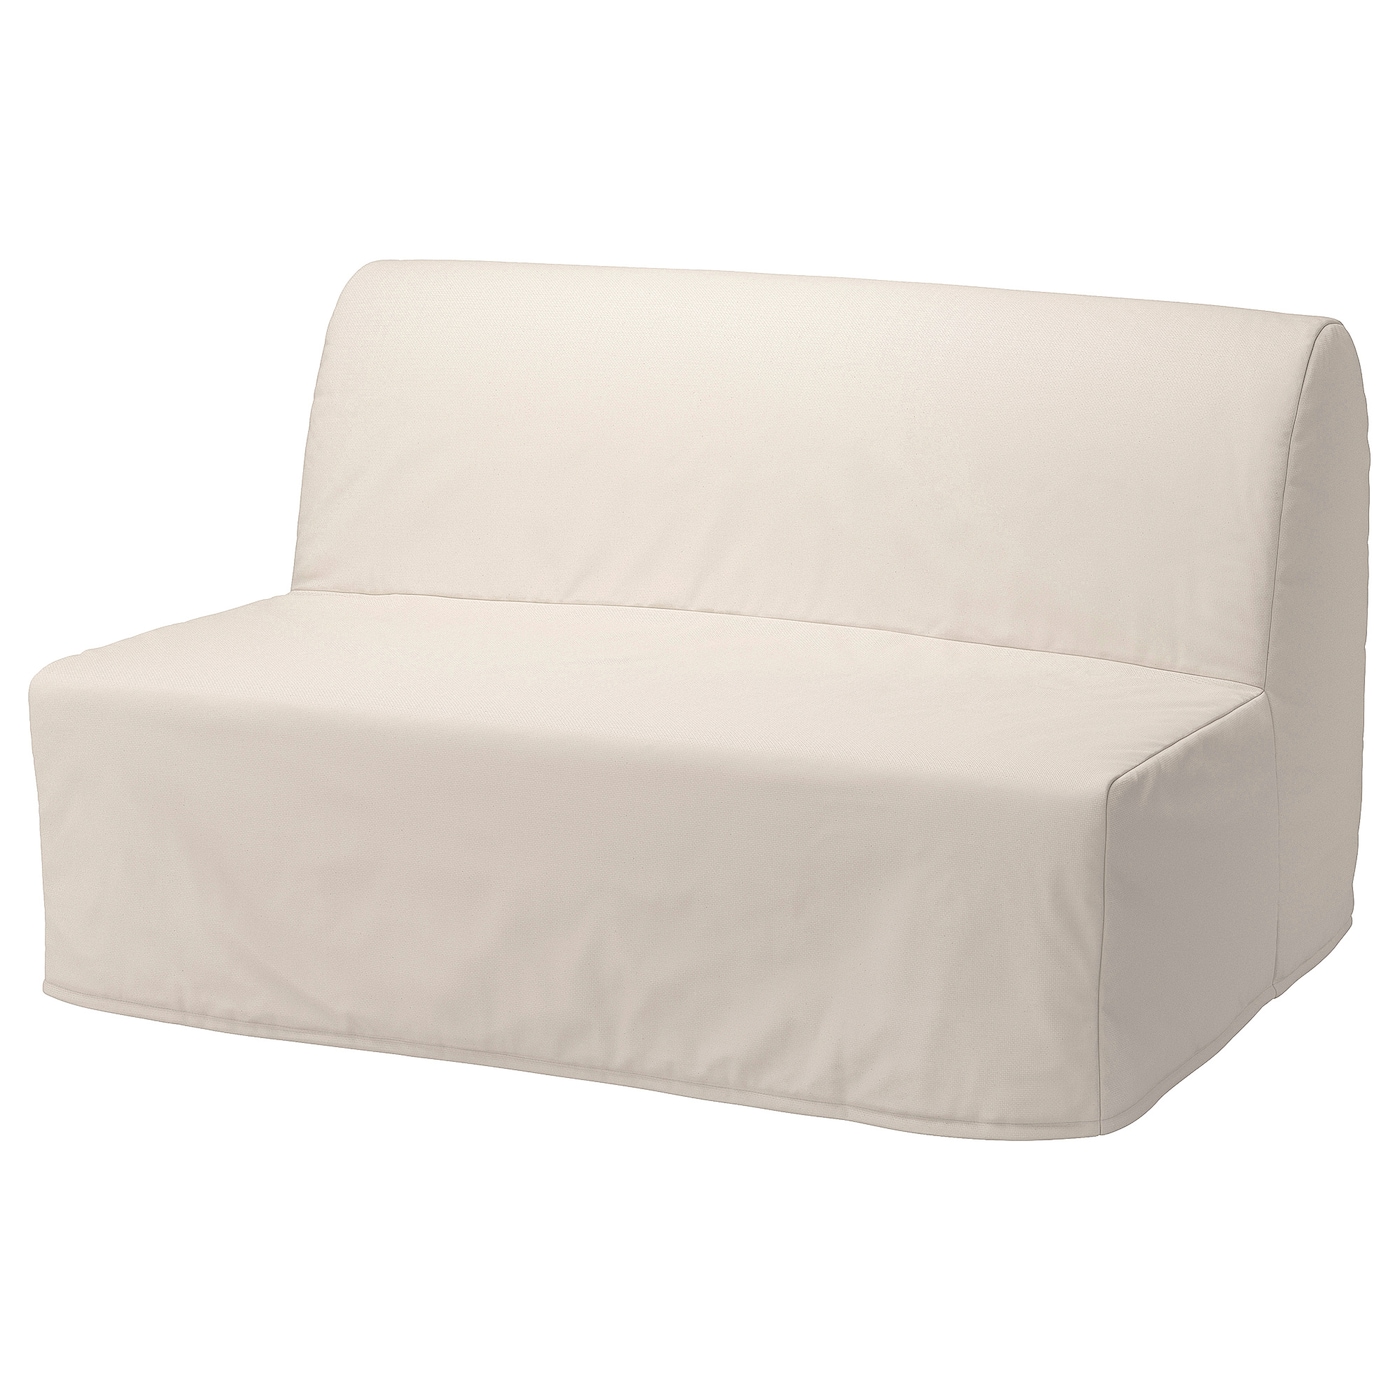 ЛИКСЕЛЕ ЛЕВОС 2 раскладных дивана-кровати, Ранста натуральный цвет LYCKSELE LÖVÅS IKEA